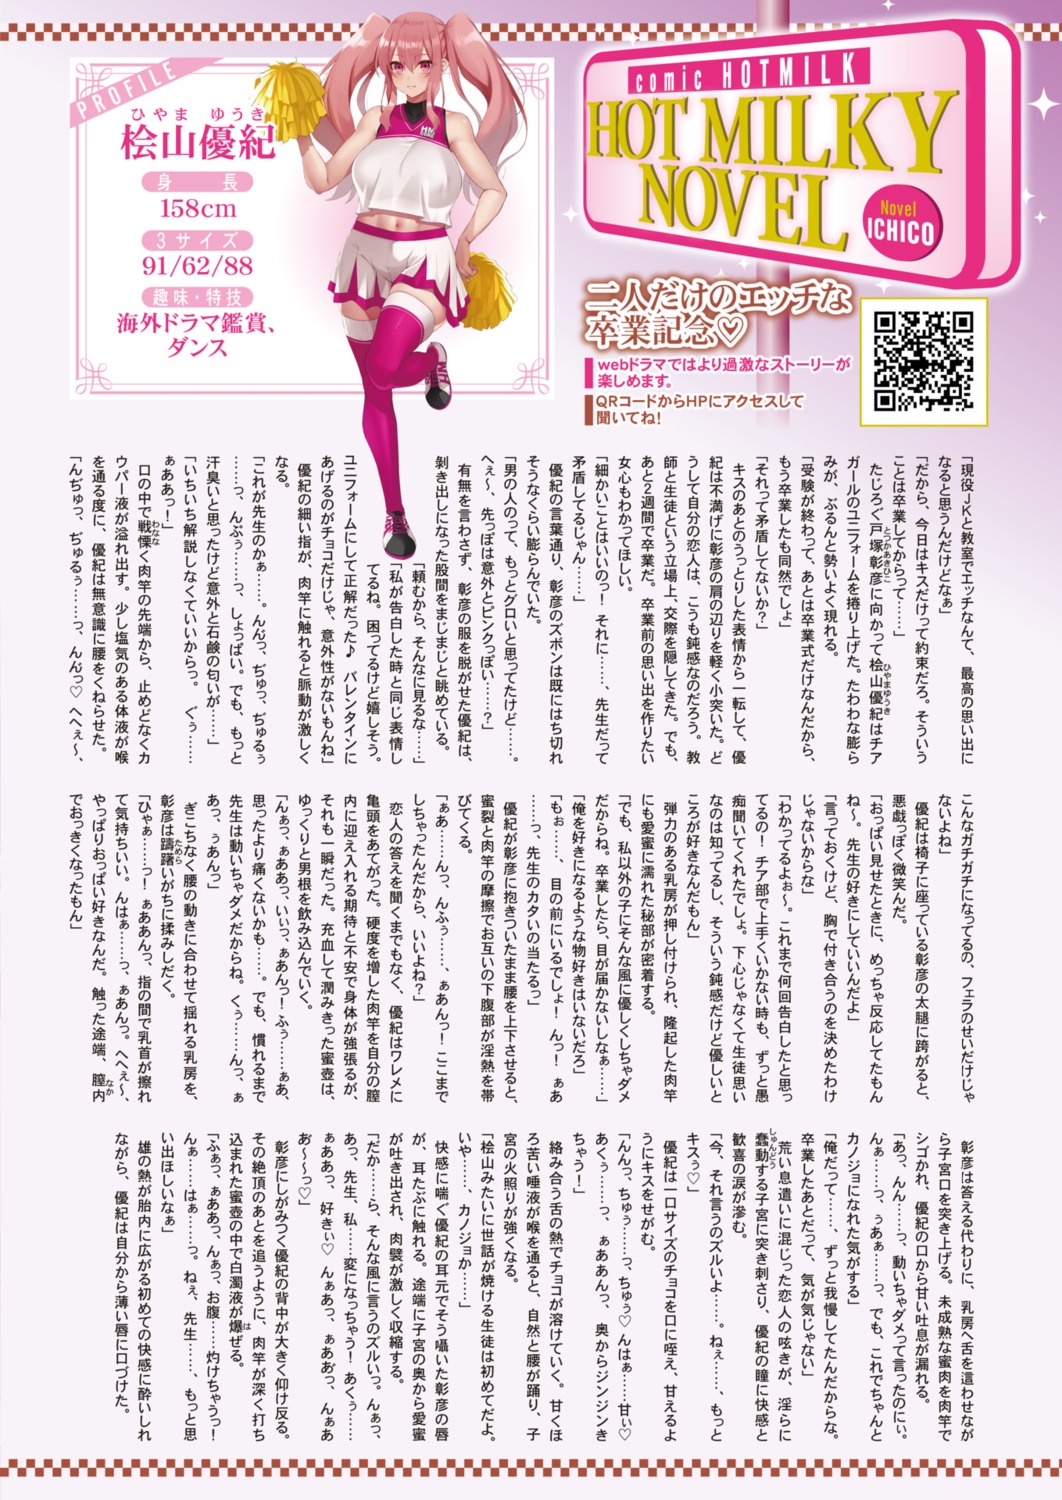 asakura_kukuri cheerleader text